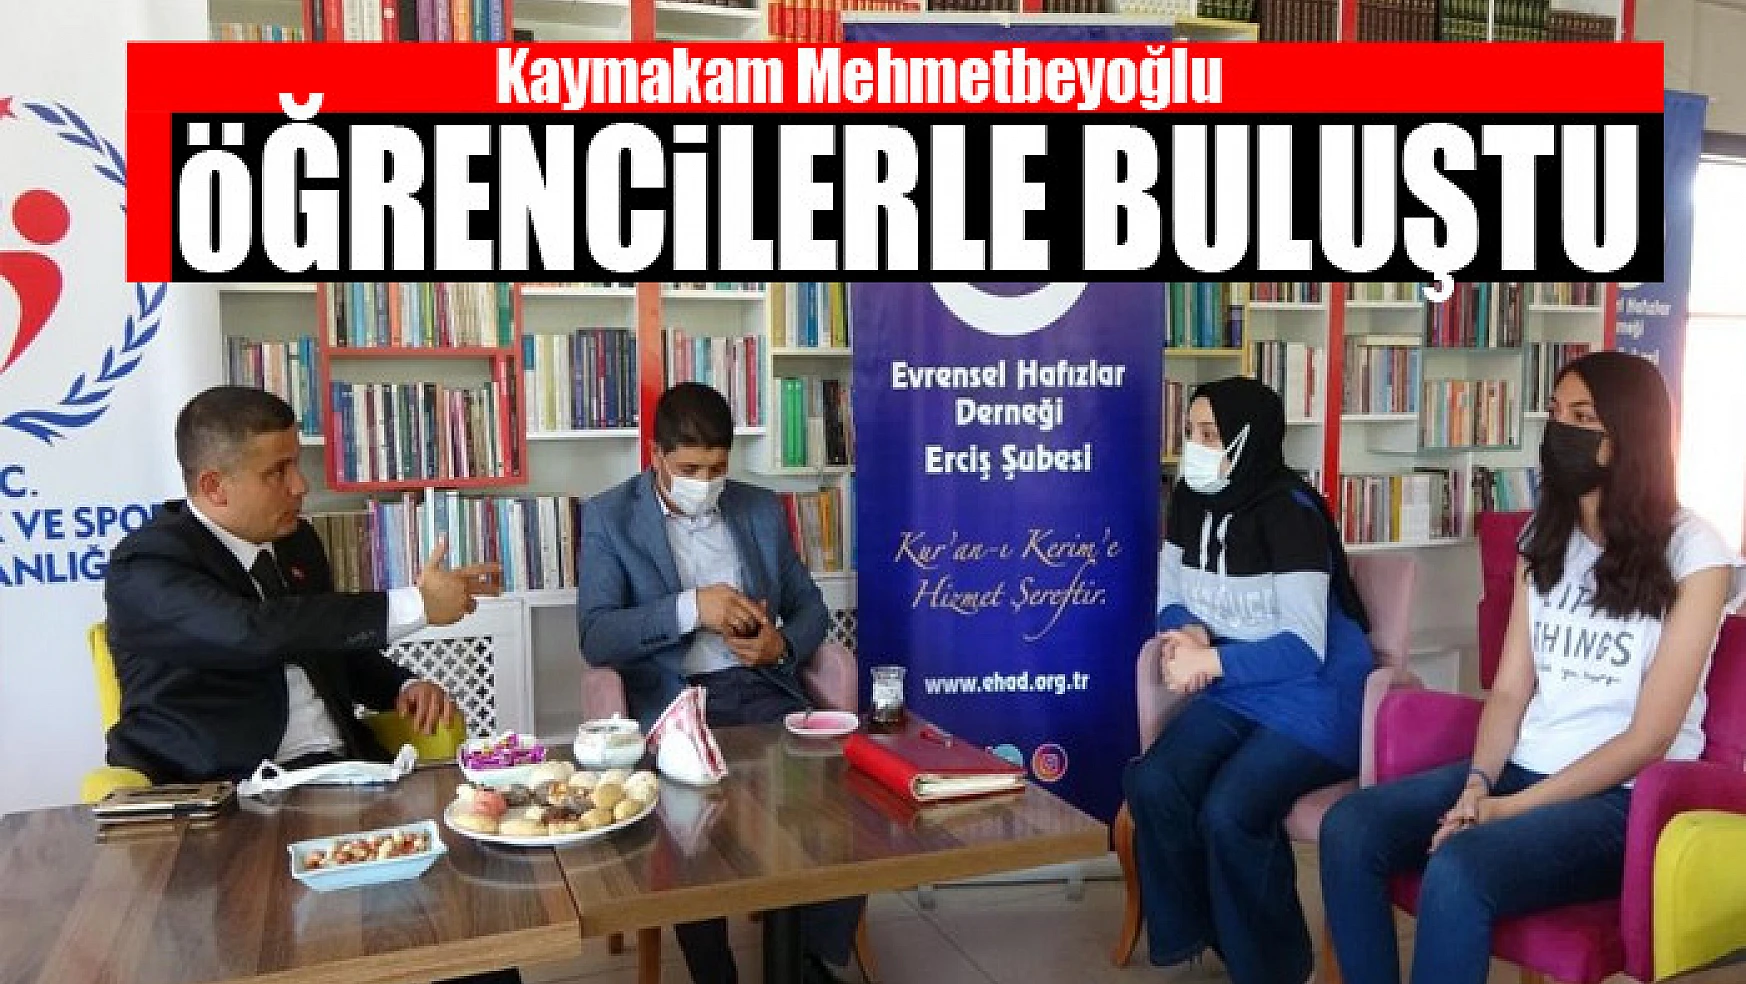 Kaymakam Mehmetbeyoğlu öğrencilerle buluştu